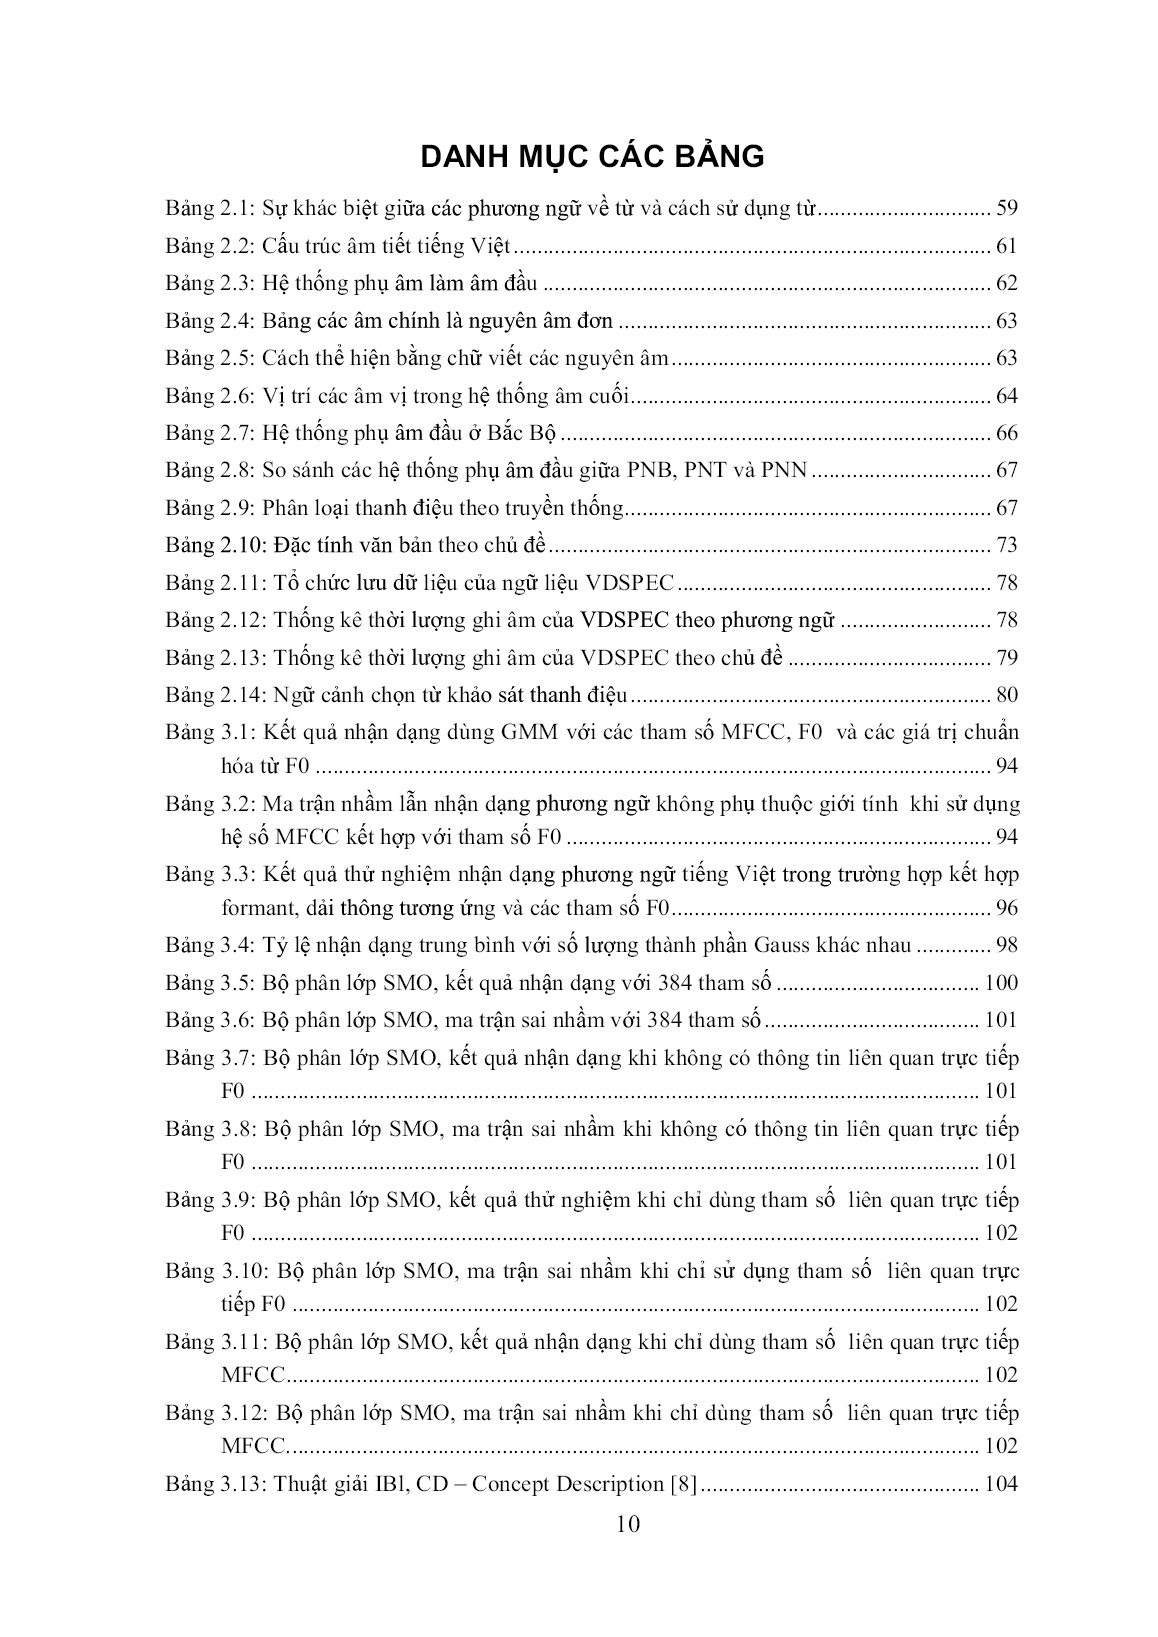 Luận án Nhận dạng tự động tiếng nói phát âm liên tục cho các phương ngữ chính của tiếng Việt theo phương thức phát âm trang 10